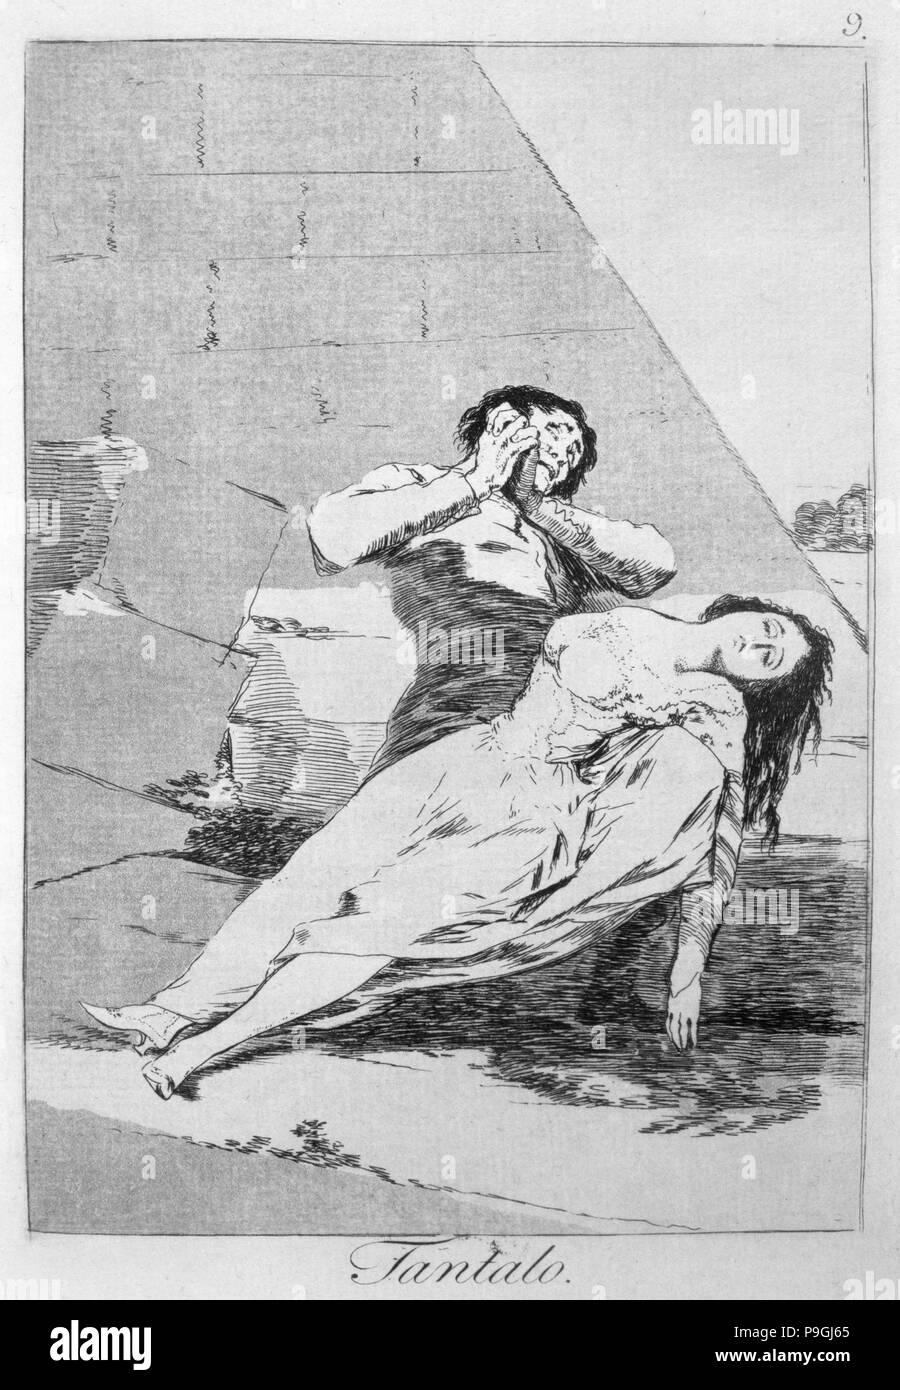 Los Caprichos, série de gravures de Francisco de Goya (1746-1828), la plaque 9 : 'Tántalo' (tantale)… Banque D'Images